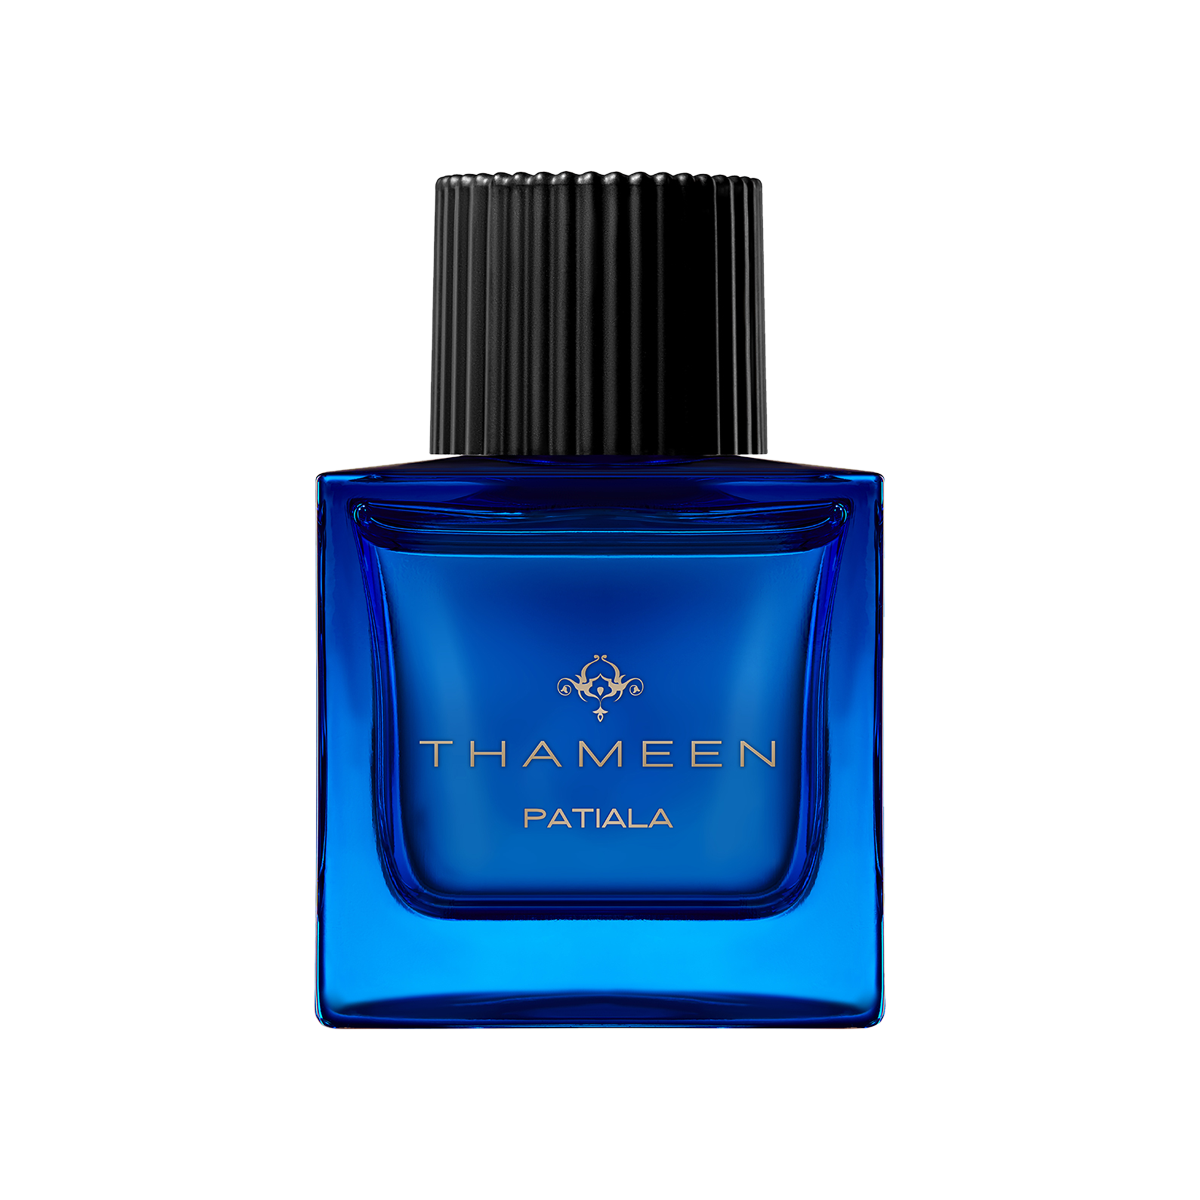 Thameen London - Patiala Extrait de Parfum